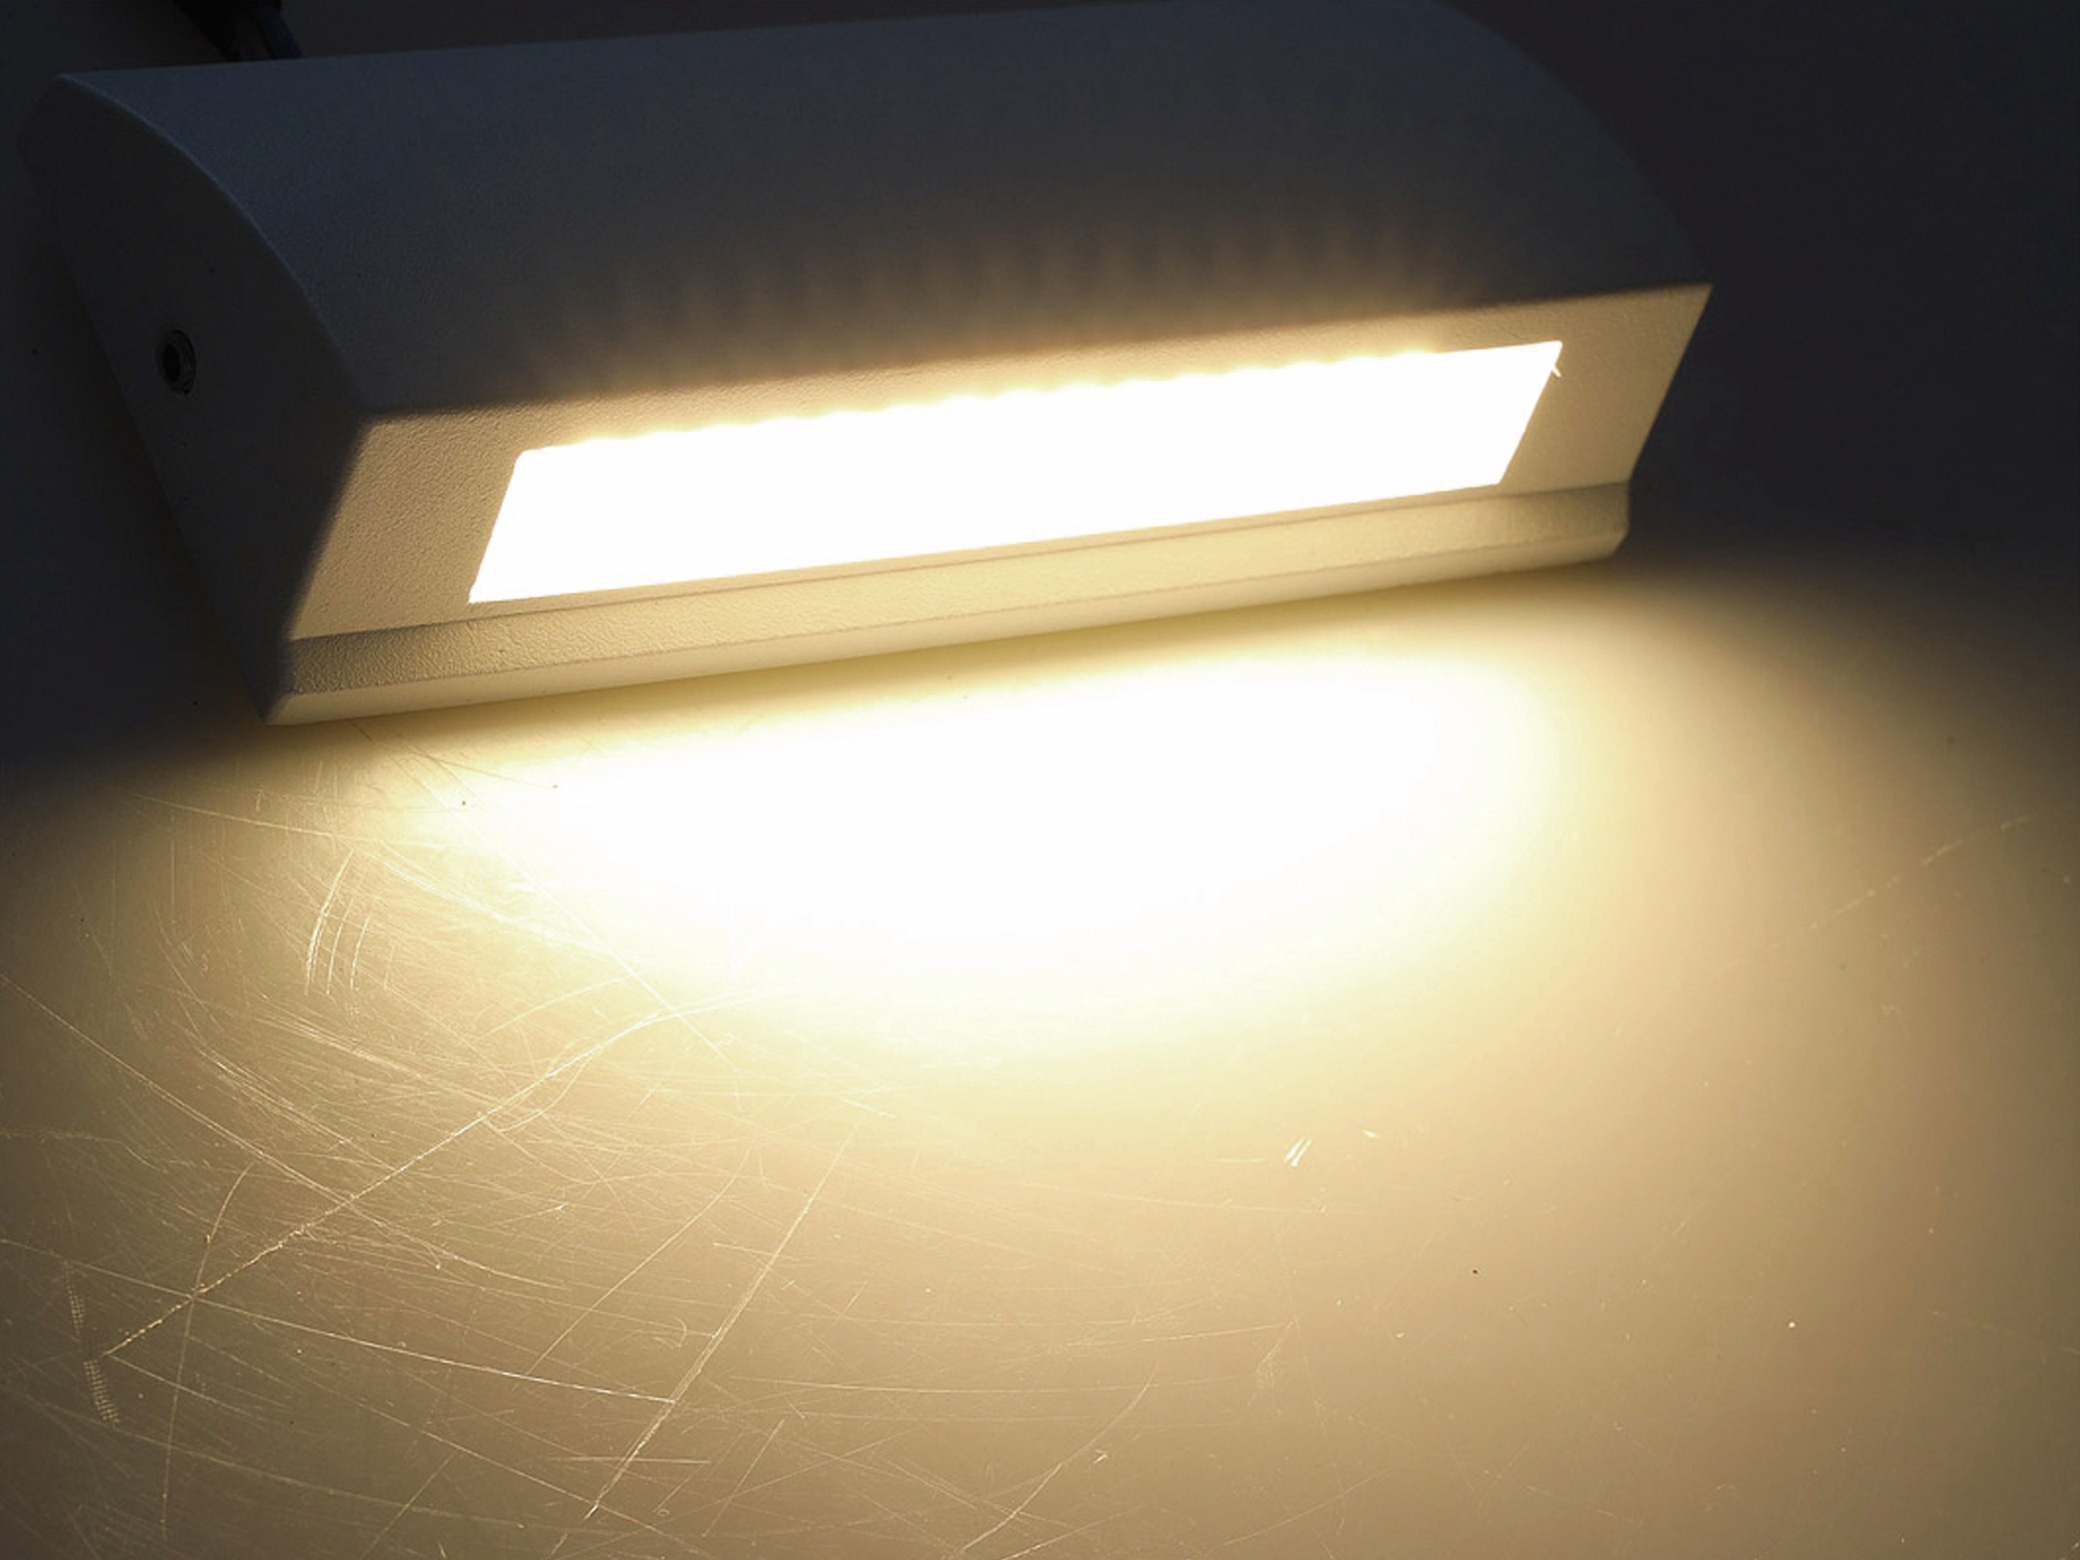 CHILITEC LED-Leuchte Barcas 6, EEK: G, 7 W, 340 lm, 3000K, IP54, weiß